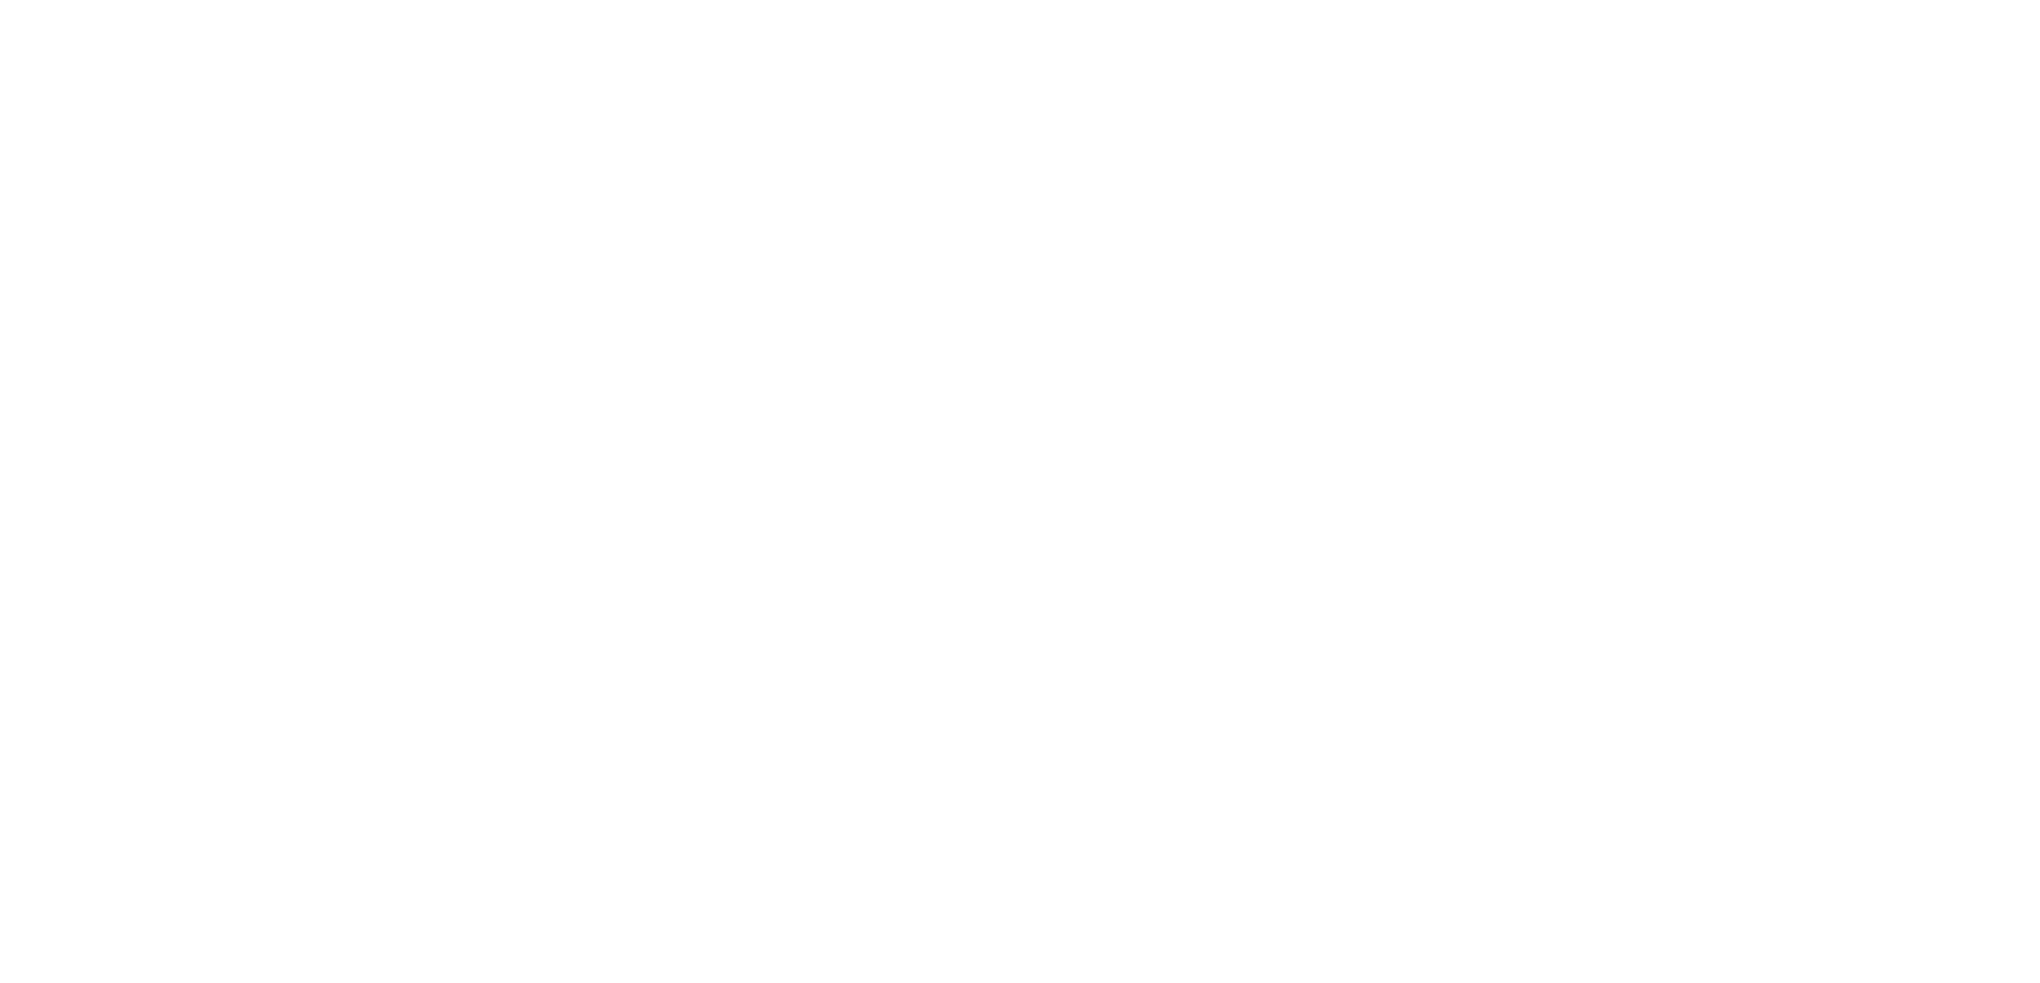 ICAgile logo - white